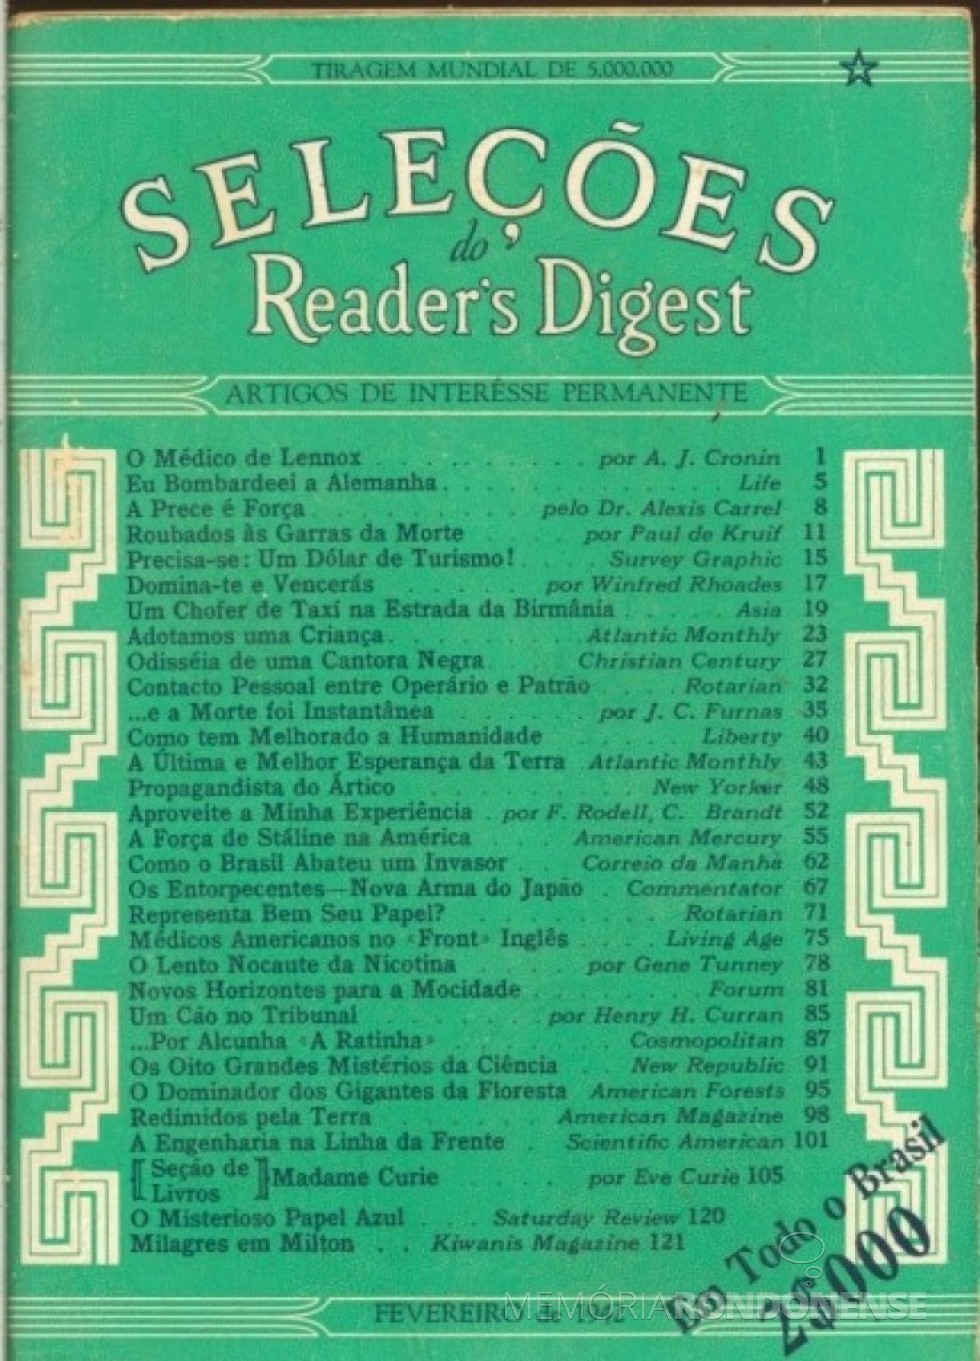 || Capa do 1º número da revista Seleções Reader's Digest, versão portuguesa para o Brasil, em fevereiro de 1942.
Imagem: Acervo Livraria Traça (São Paulo) - FOTO 3 - 